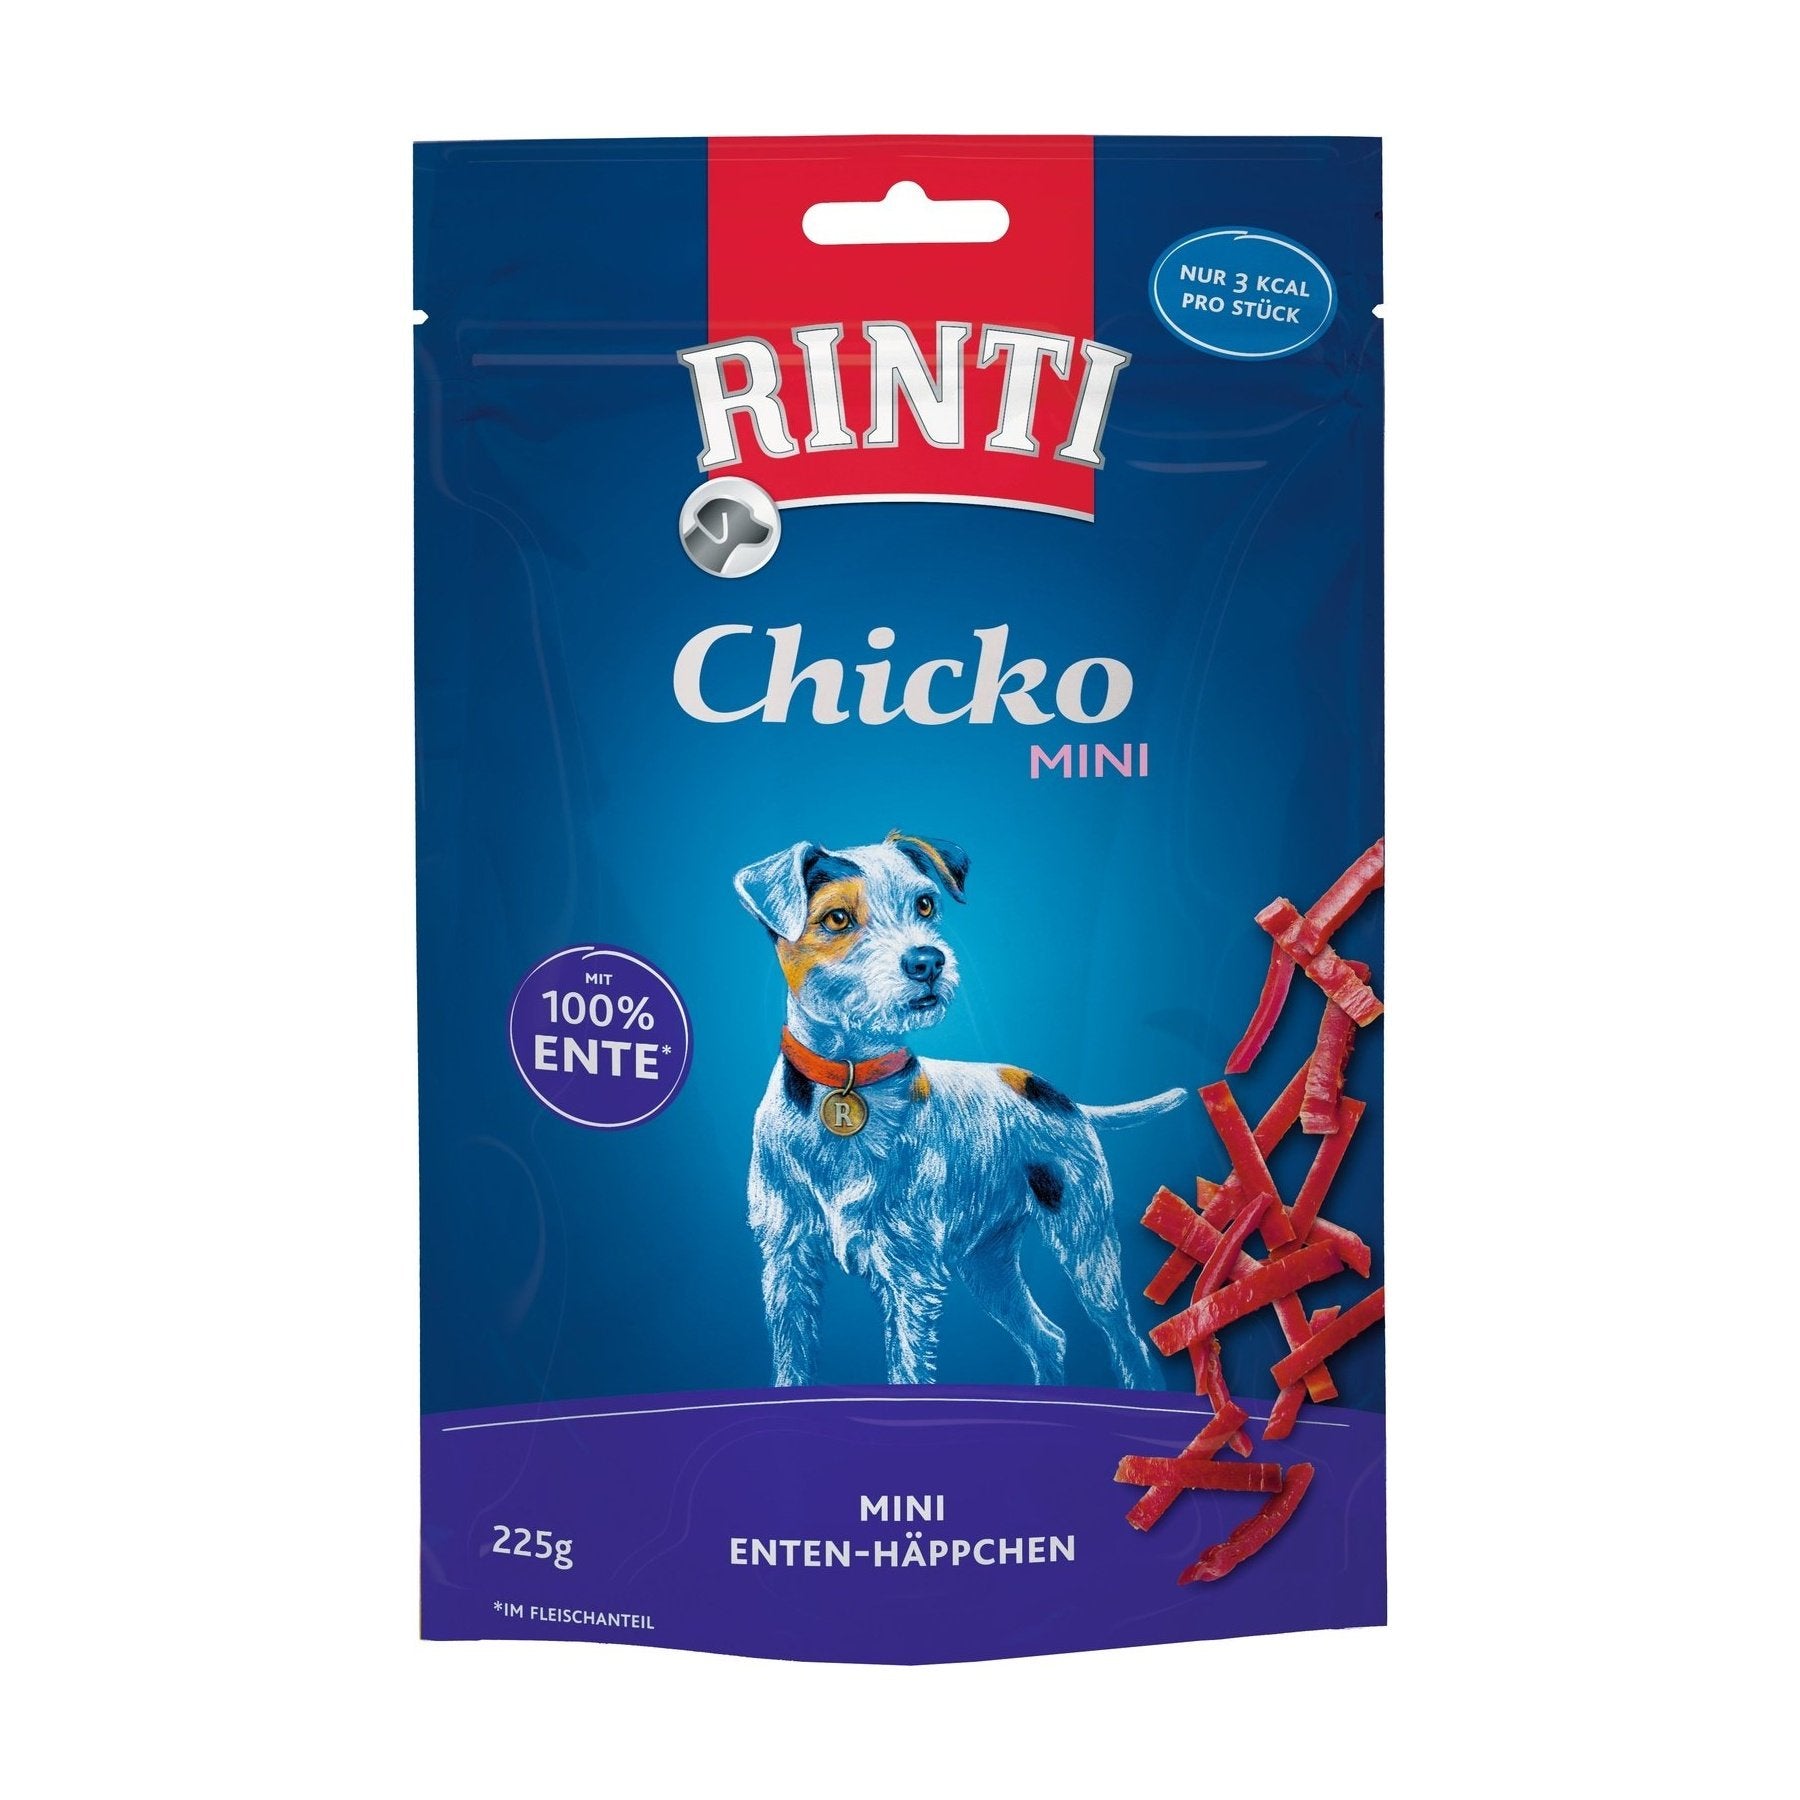 Rinti Chicko Mini Ente - zoo.de